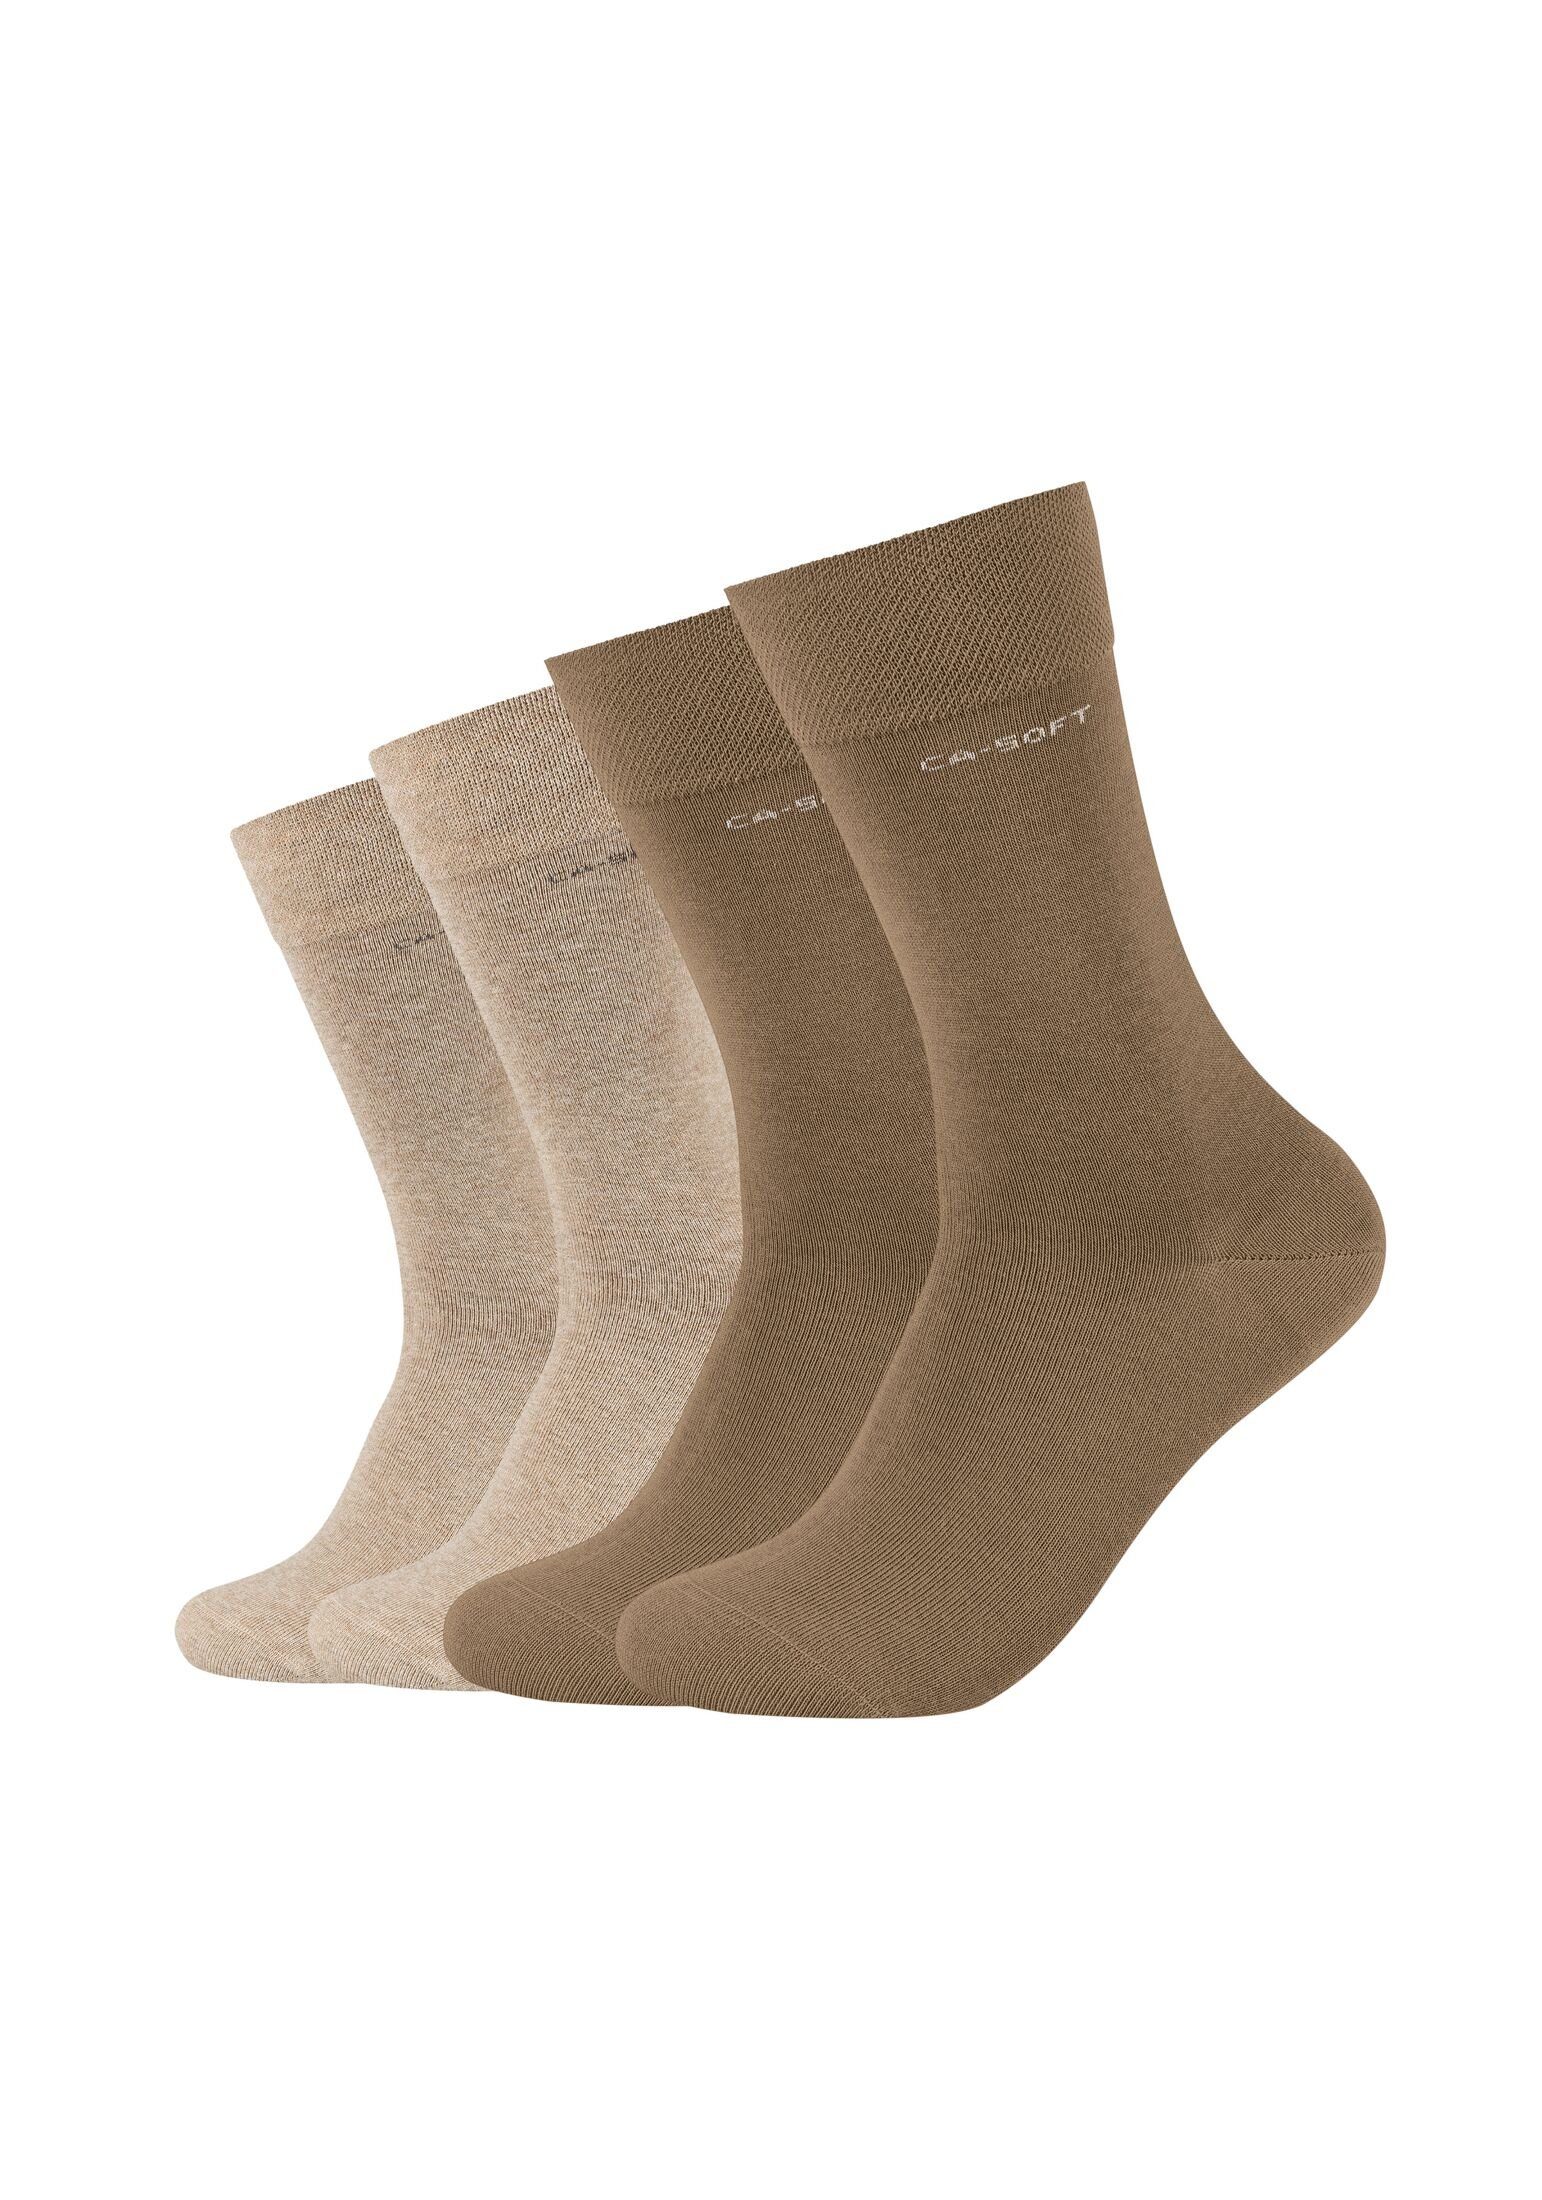 Camano Socken Socken für Damen und Herren Businesssocken Komfortbund Bequem tiger's eye